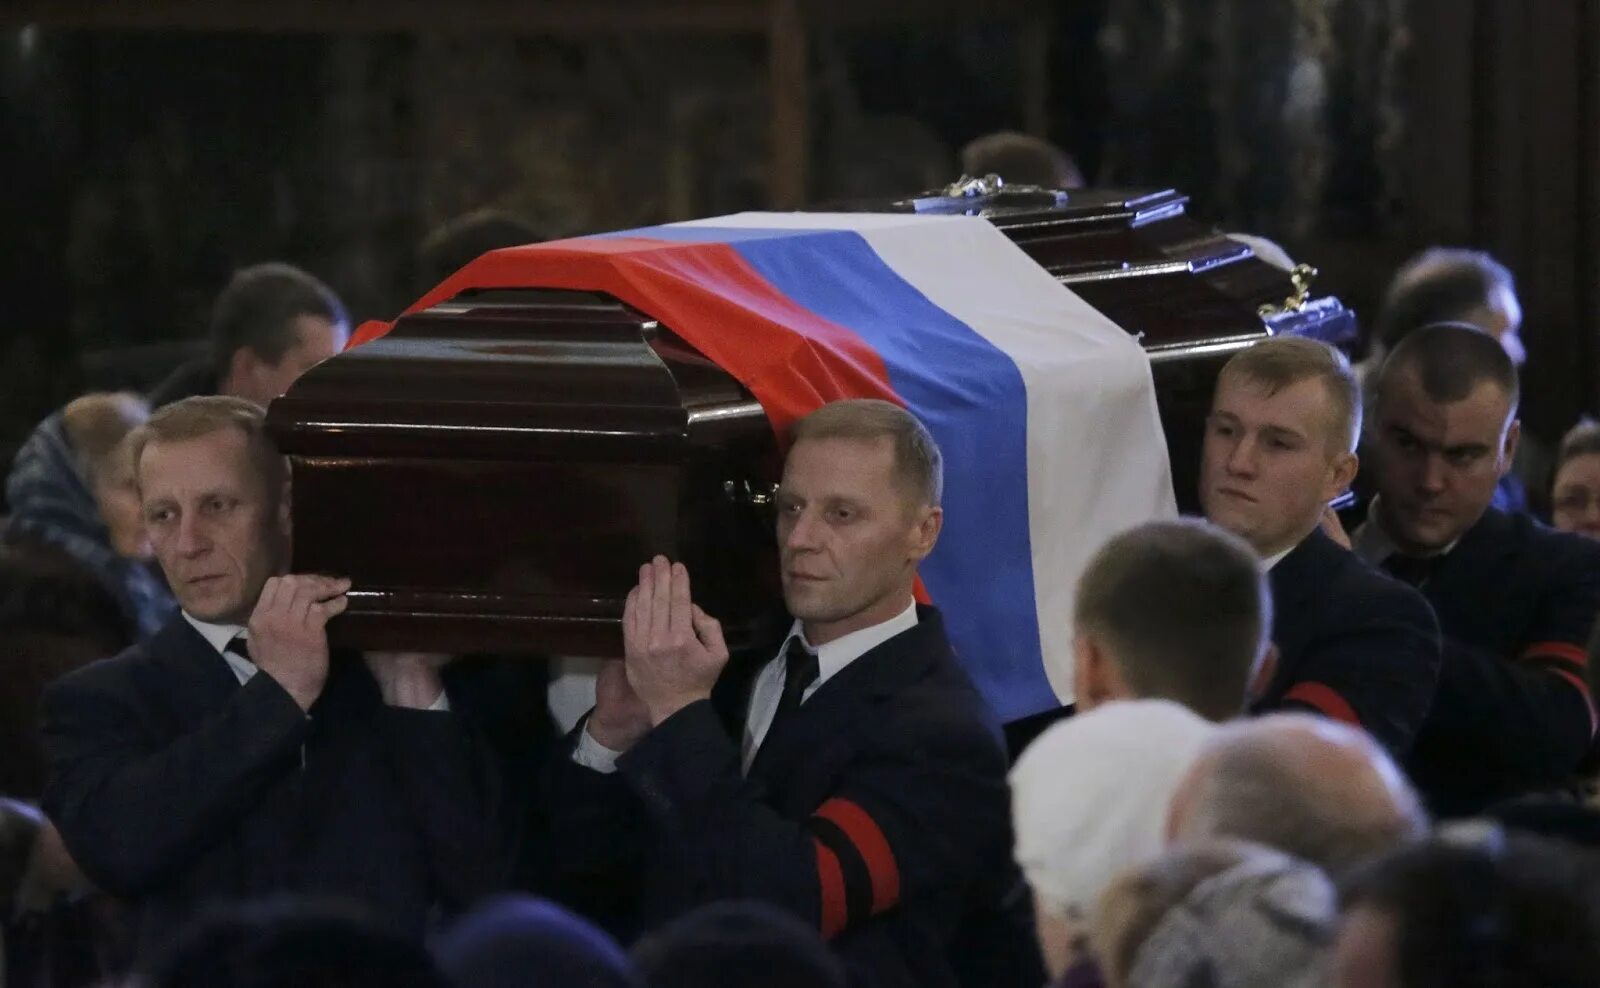 Фото навального в гробу крупно. Гроб с российским флагом.